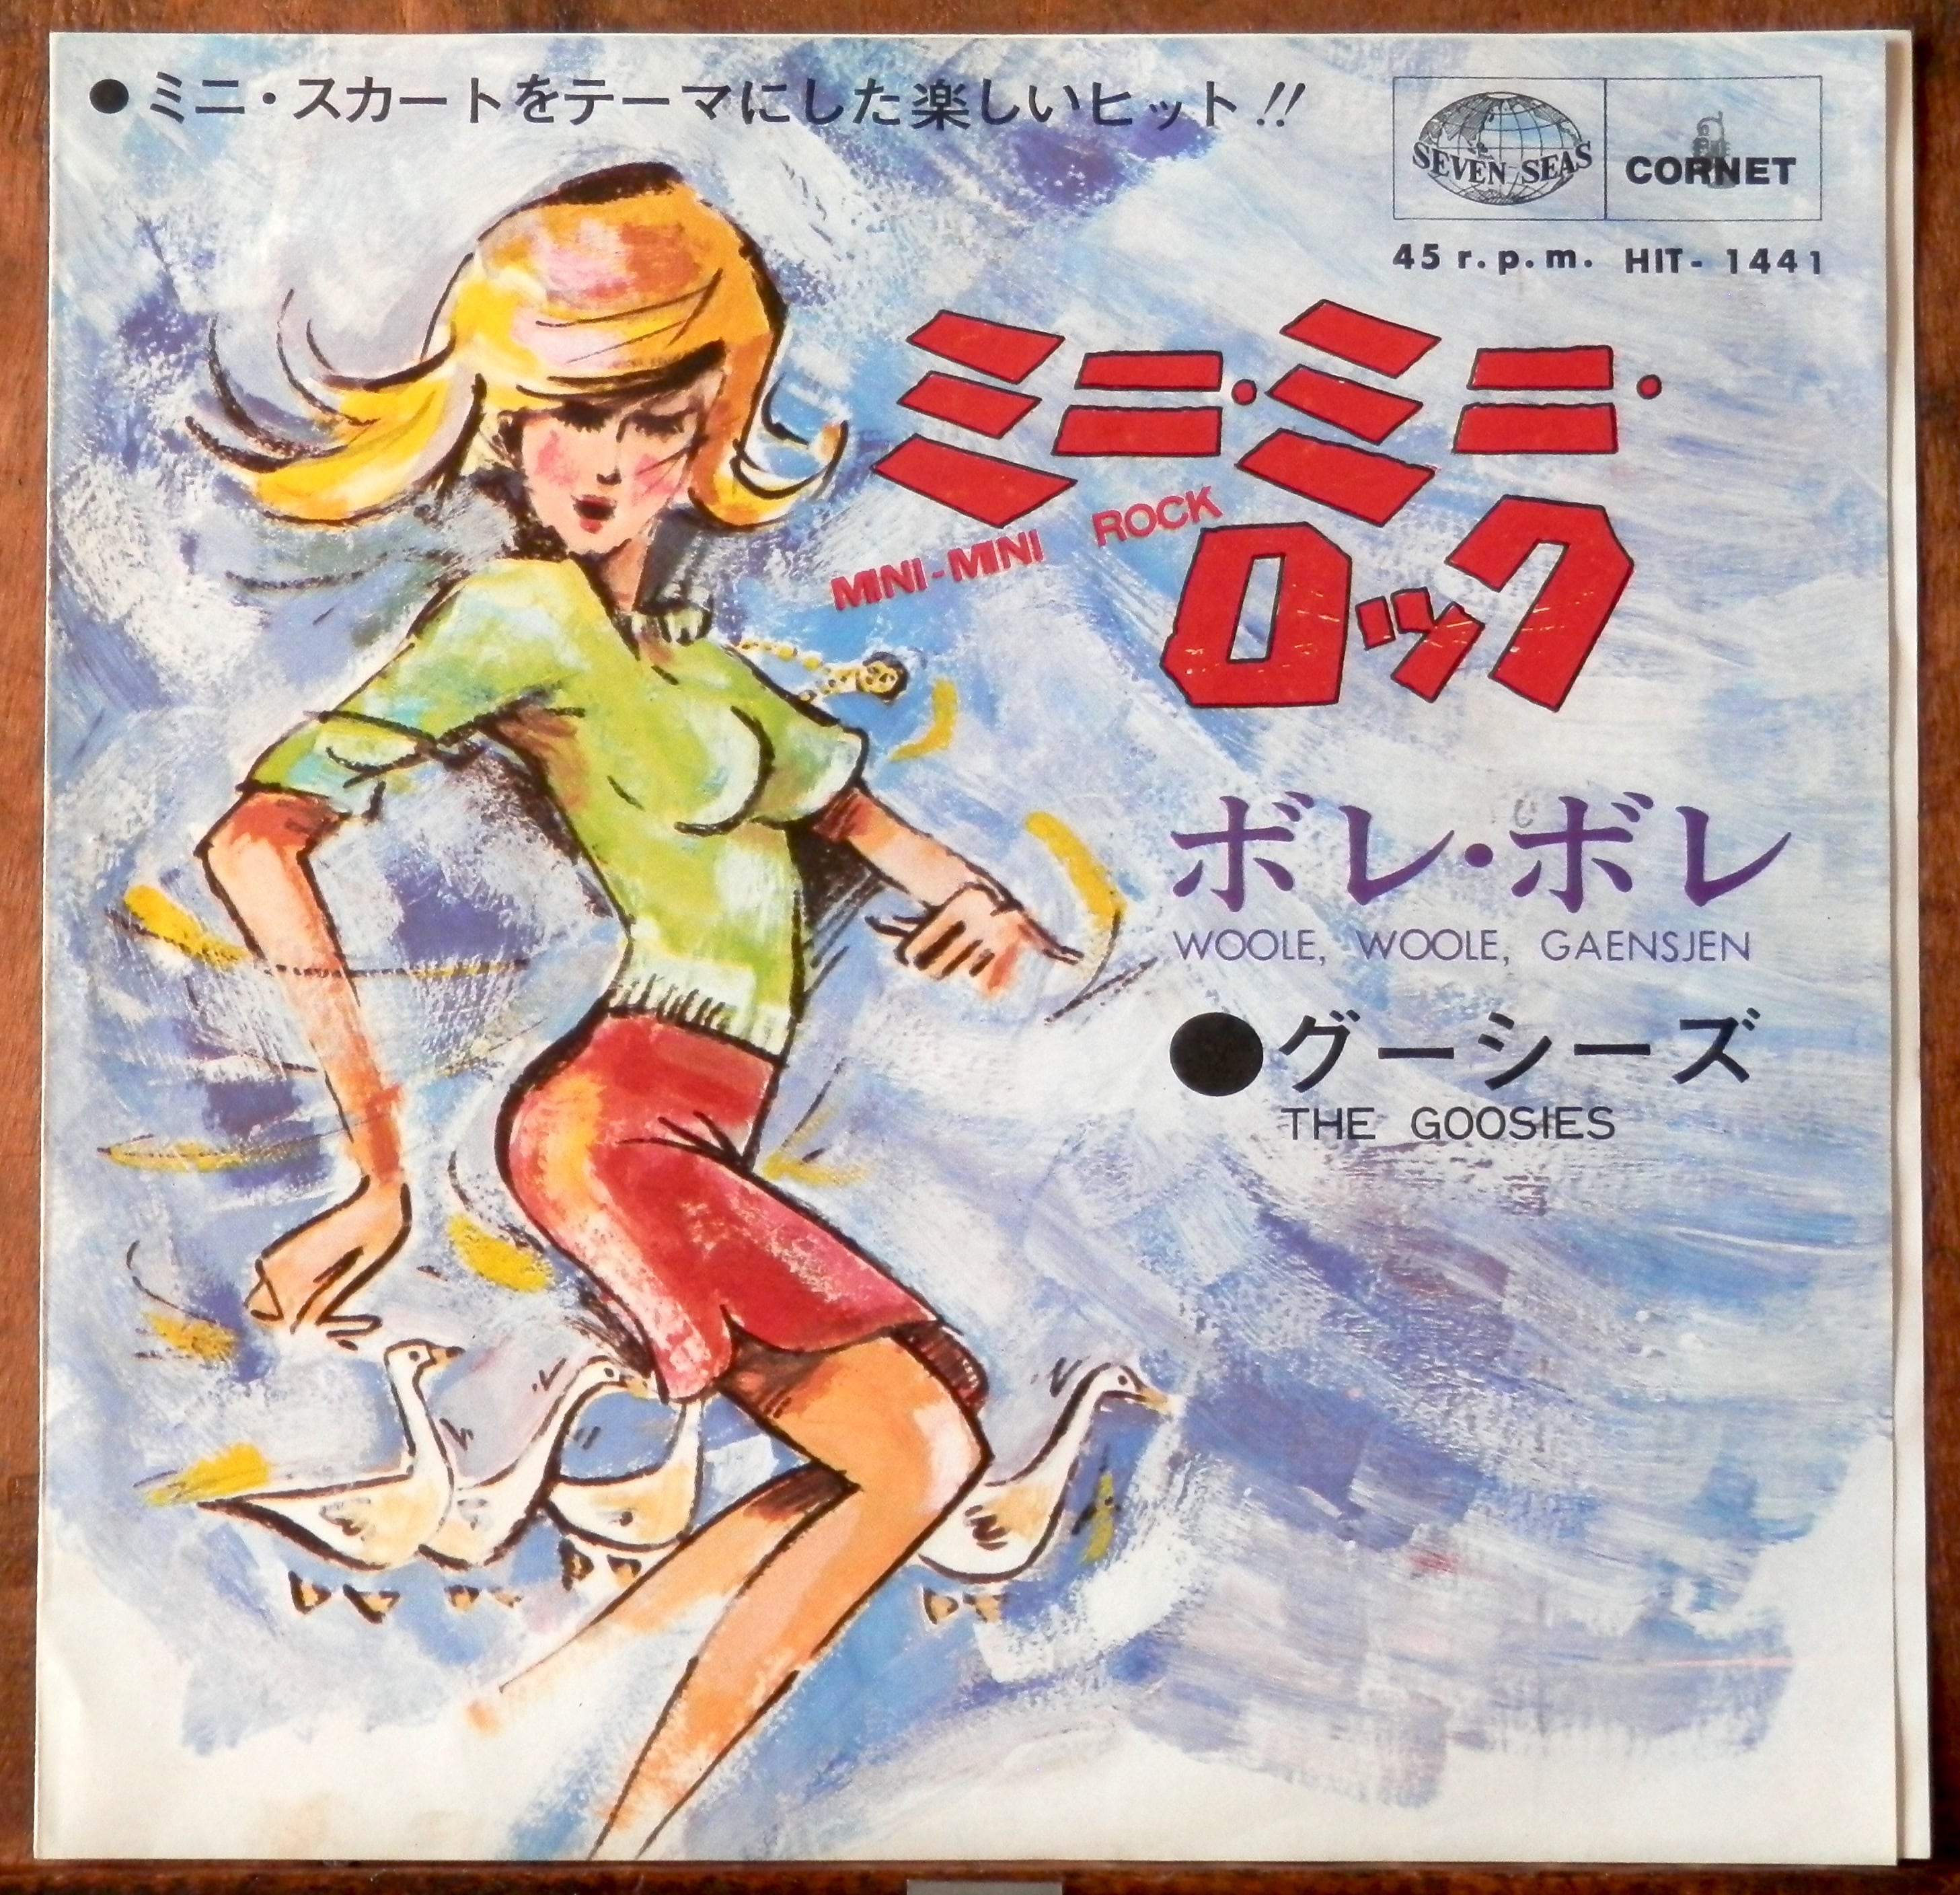 '67【EP】グーシーズ ミニ・ミニ・ロック 音盤窟レコード